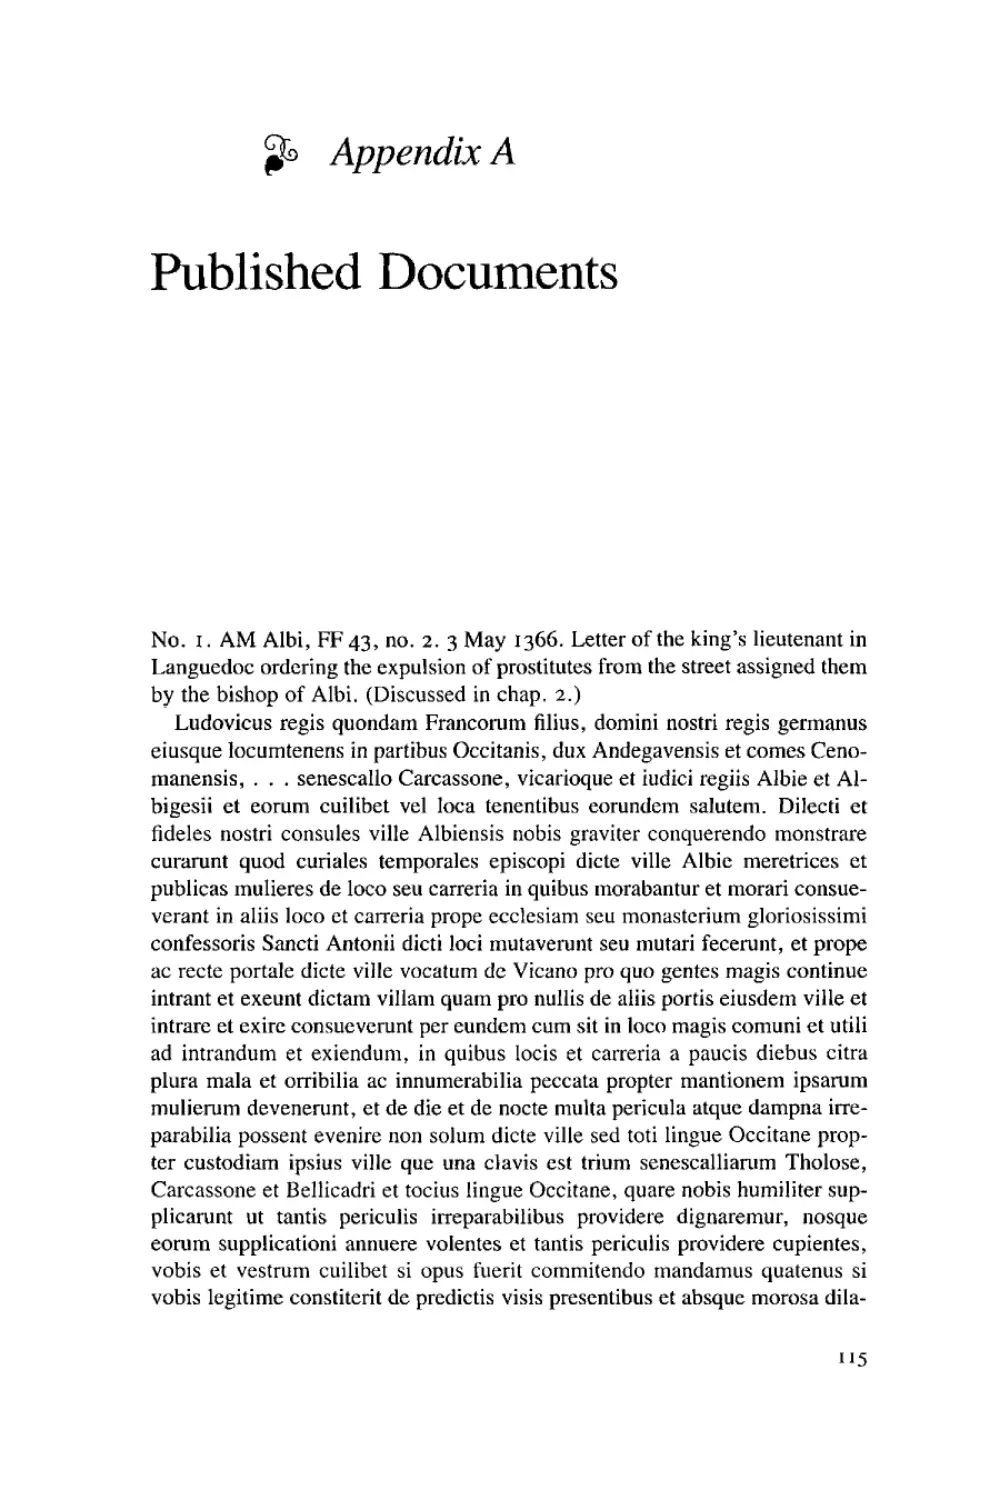 Appendix A: Published Documents